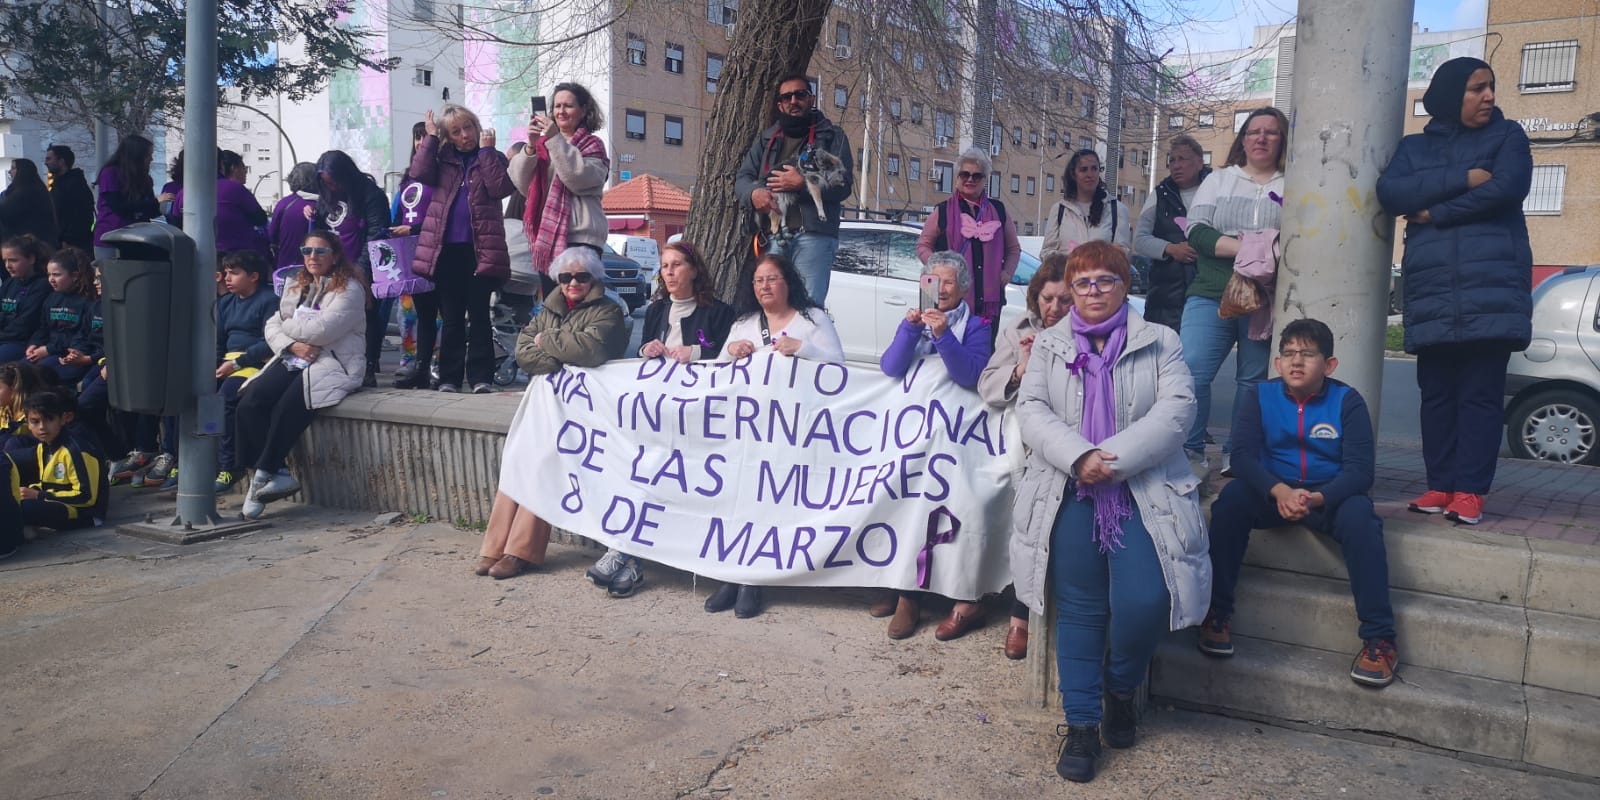 Día Internacional de las mujeres,reivindicaciones, marcha y lectura de Manifiesto desde el Distrito 5...en directo